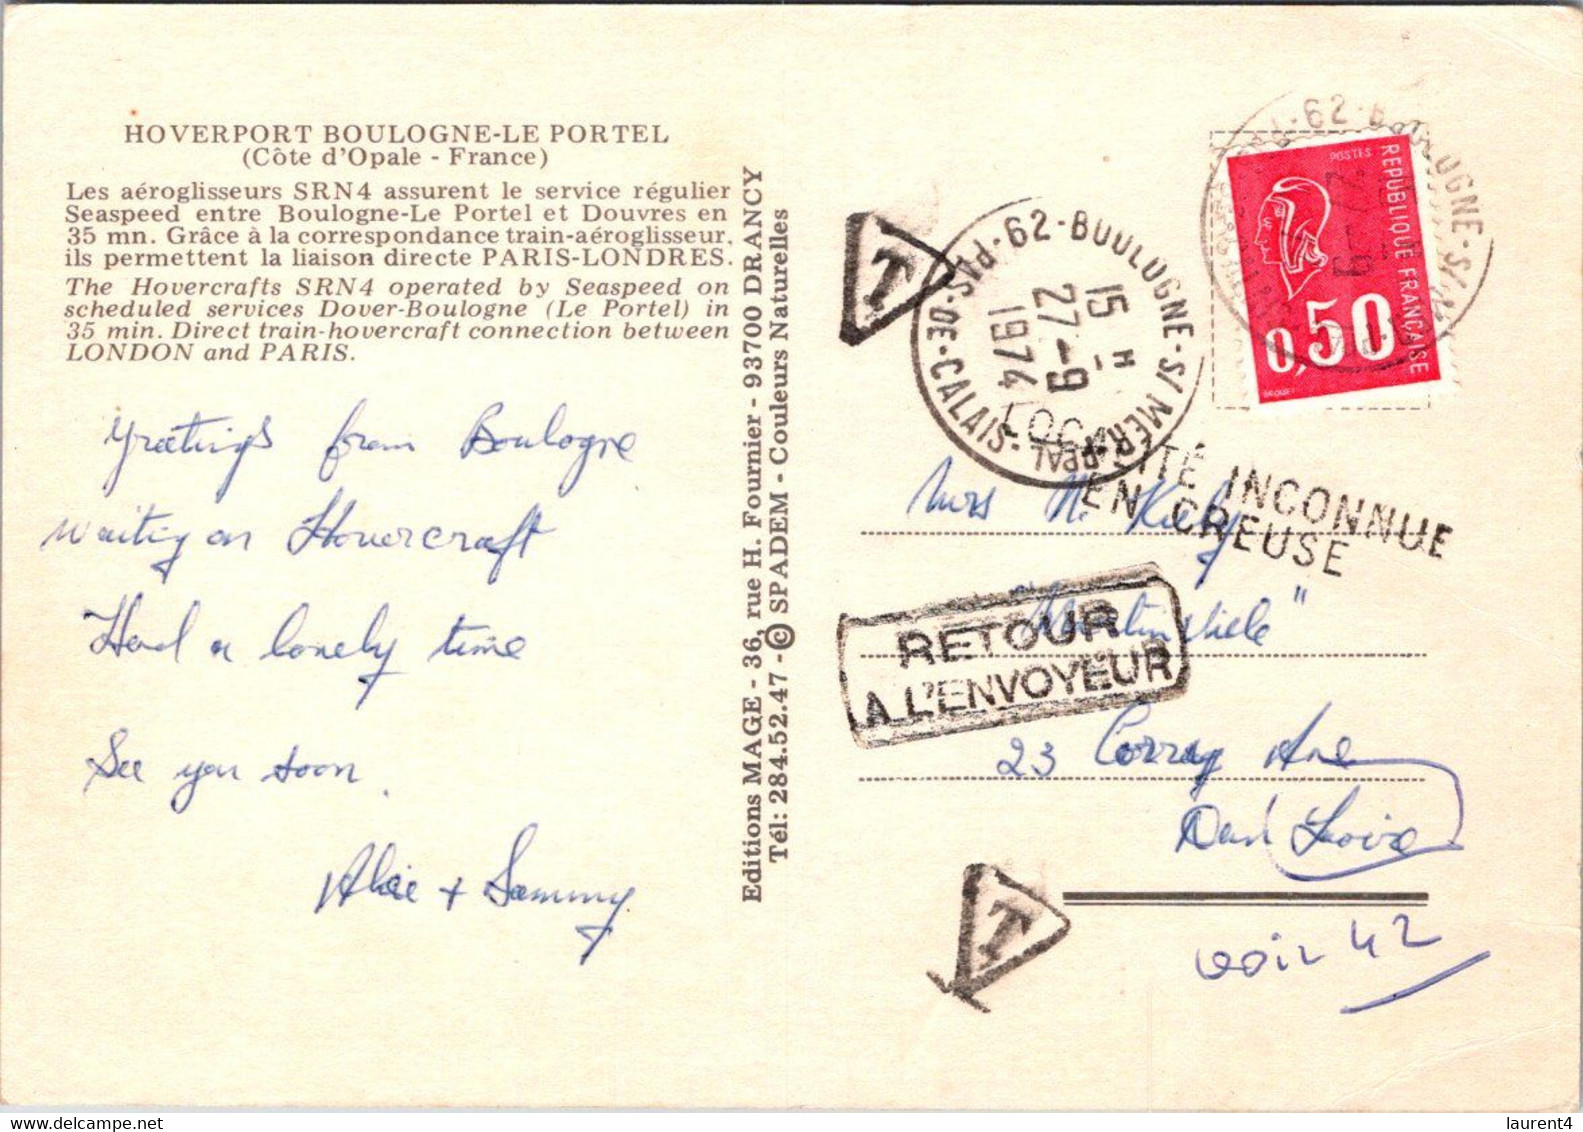 (1 Oø 37) France - Hoverport Boulogne Le Portel - (posted 1974) TAXED - Returned To Sender / RTS - Hovercrafts